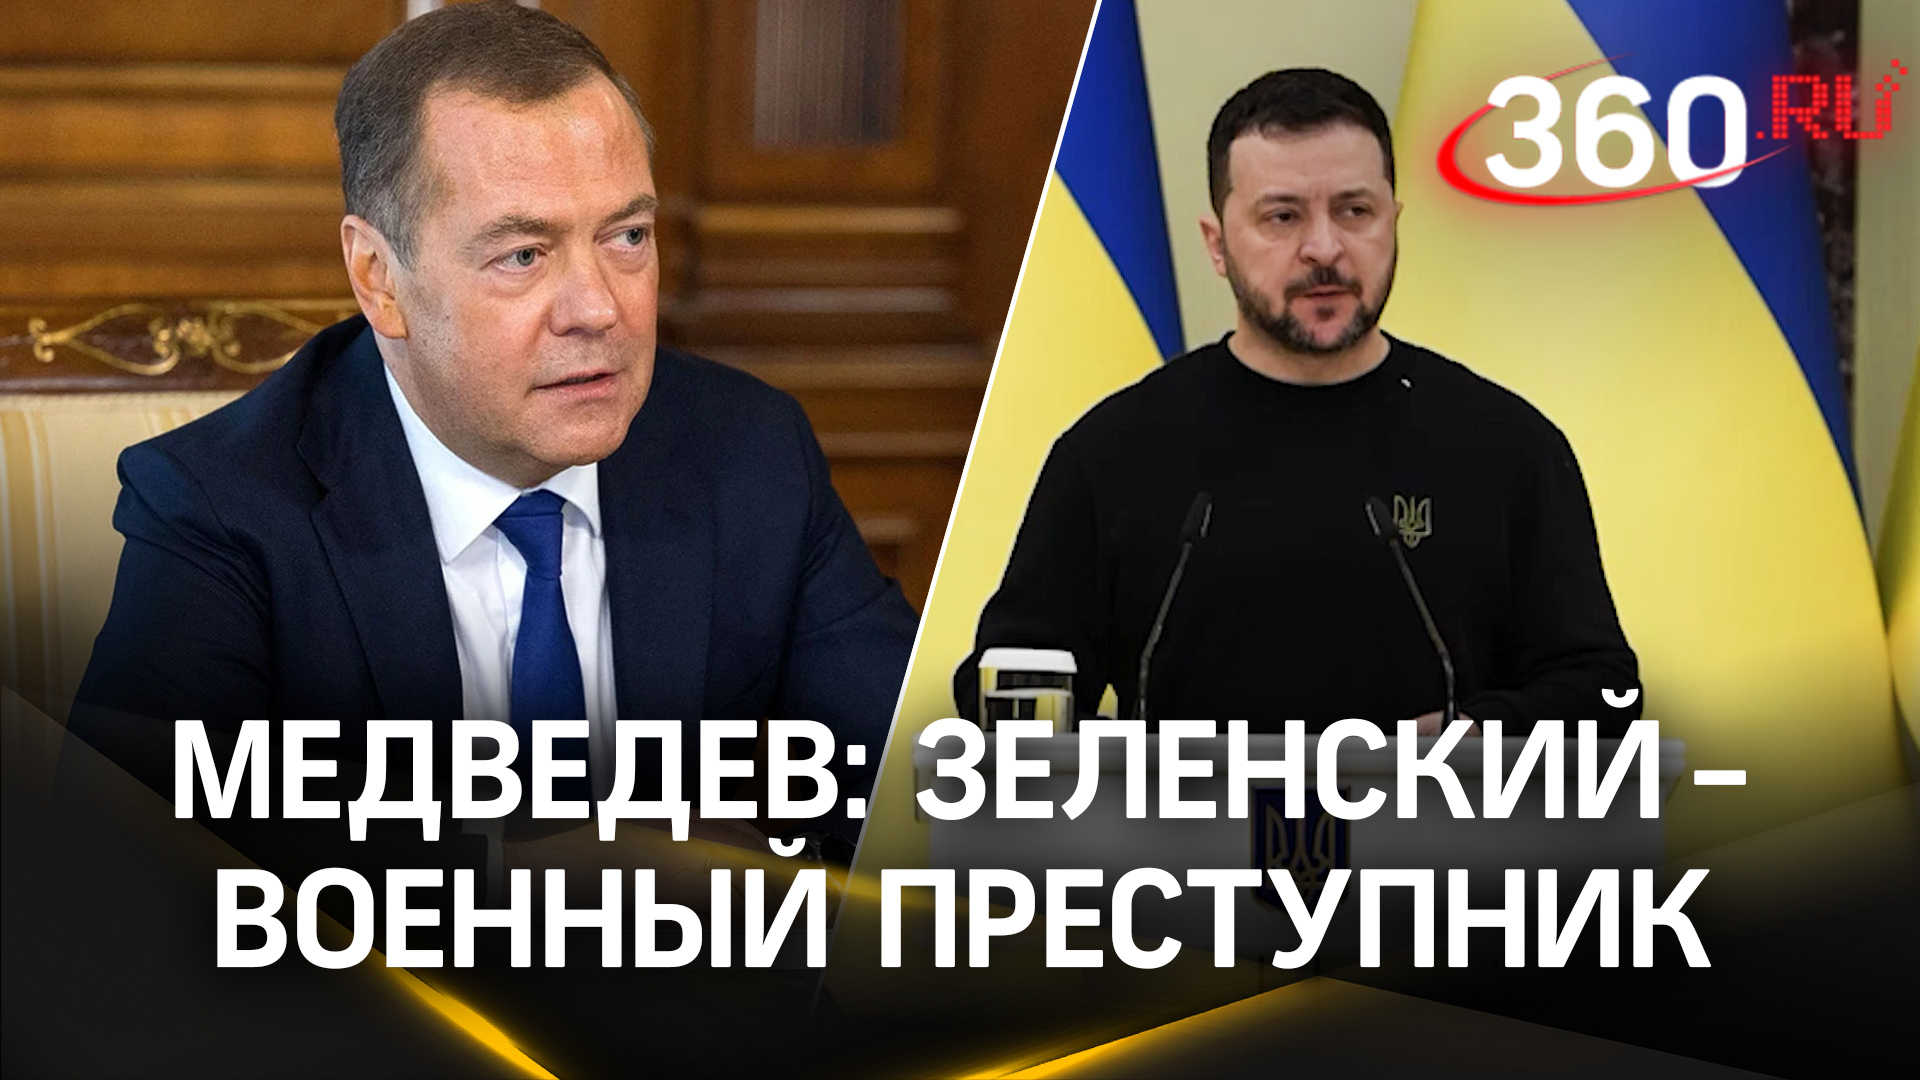 Медведев: Зеленский - военный преступник. Госдума: Киев - террорист